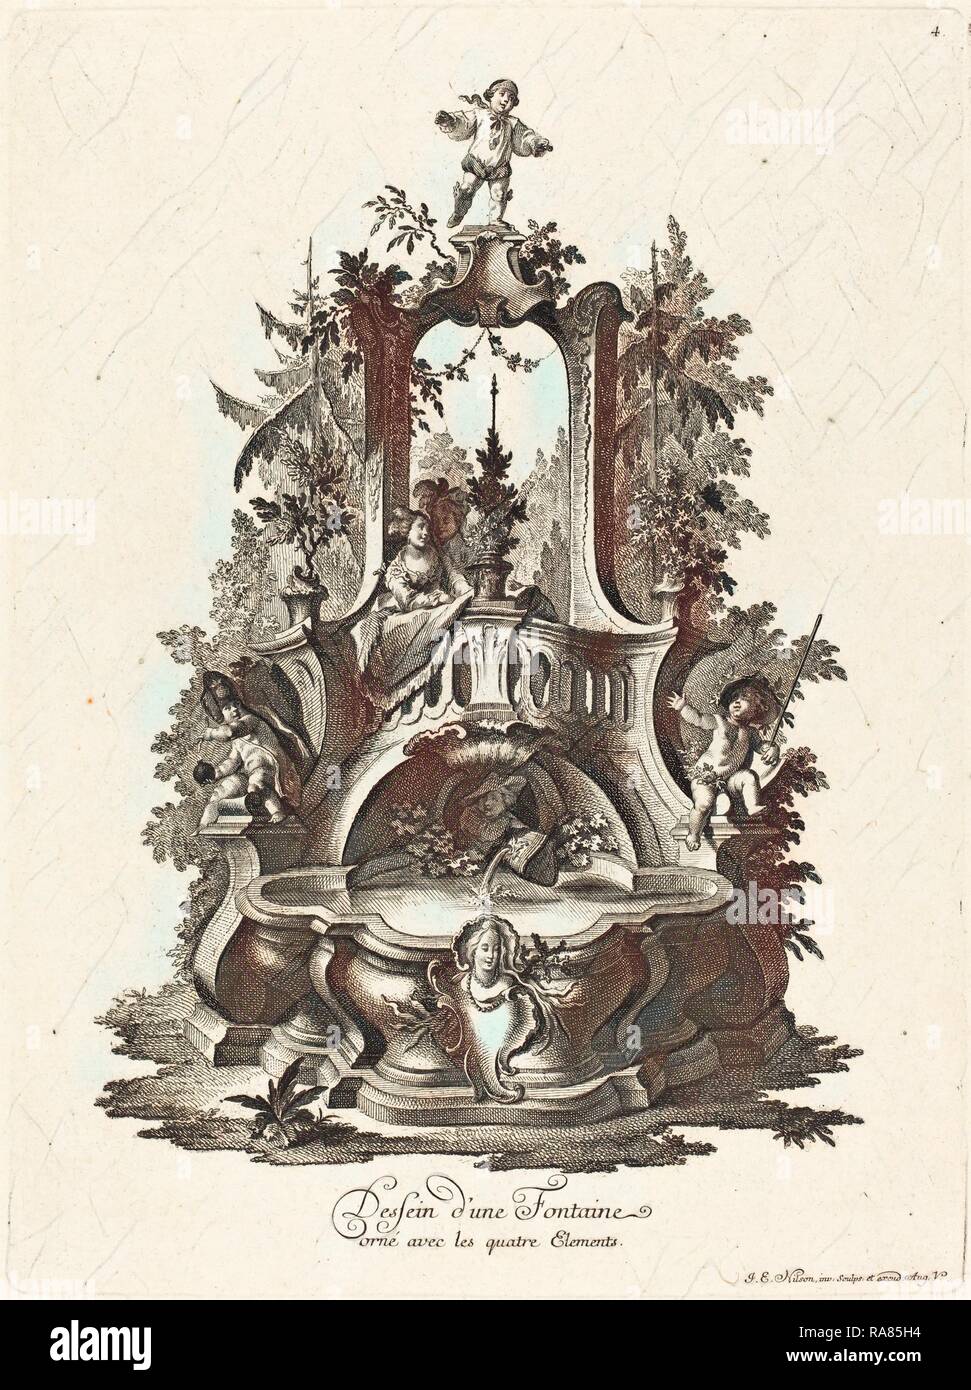 Johann Esaias Nilson (German, 1721 - 1788), Dessein d'une Fontaine orné avec les quatre Elements (Design for a reimagined Stock Photo